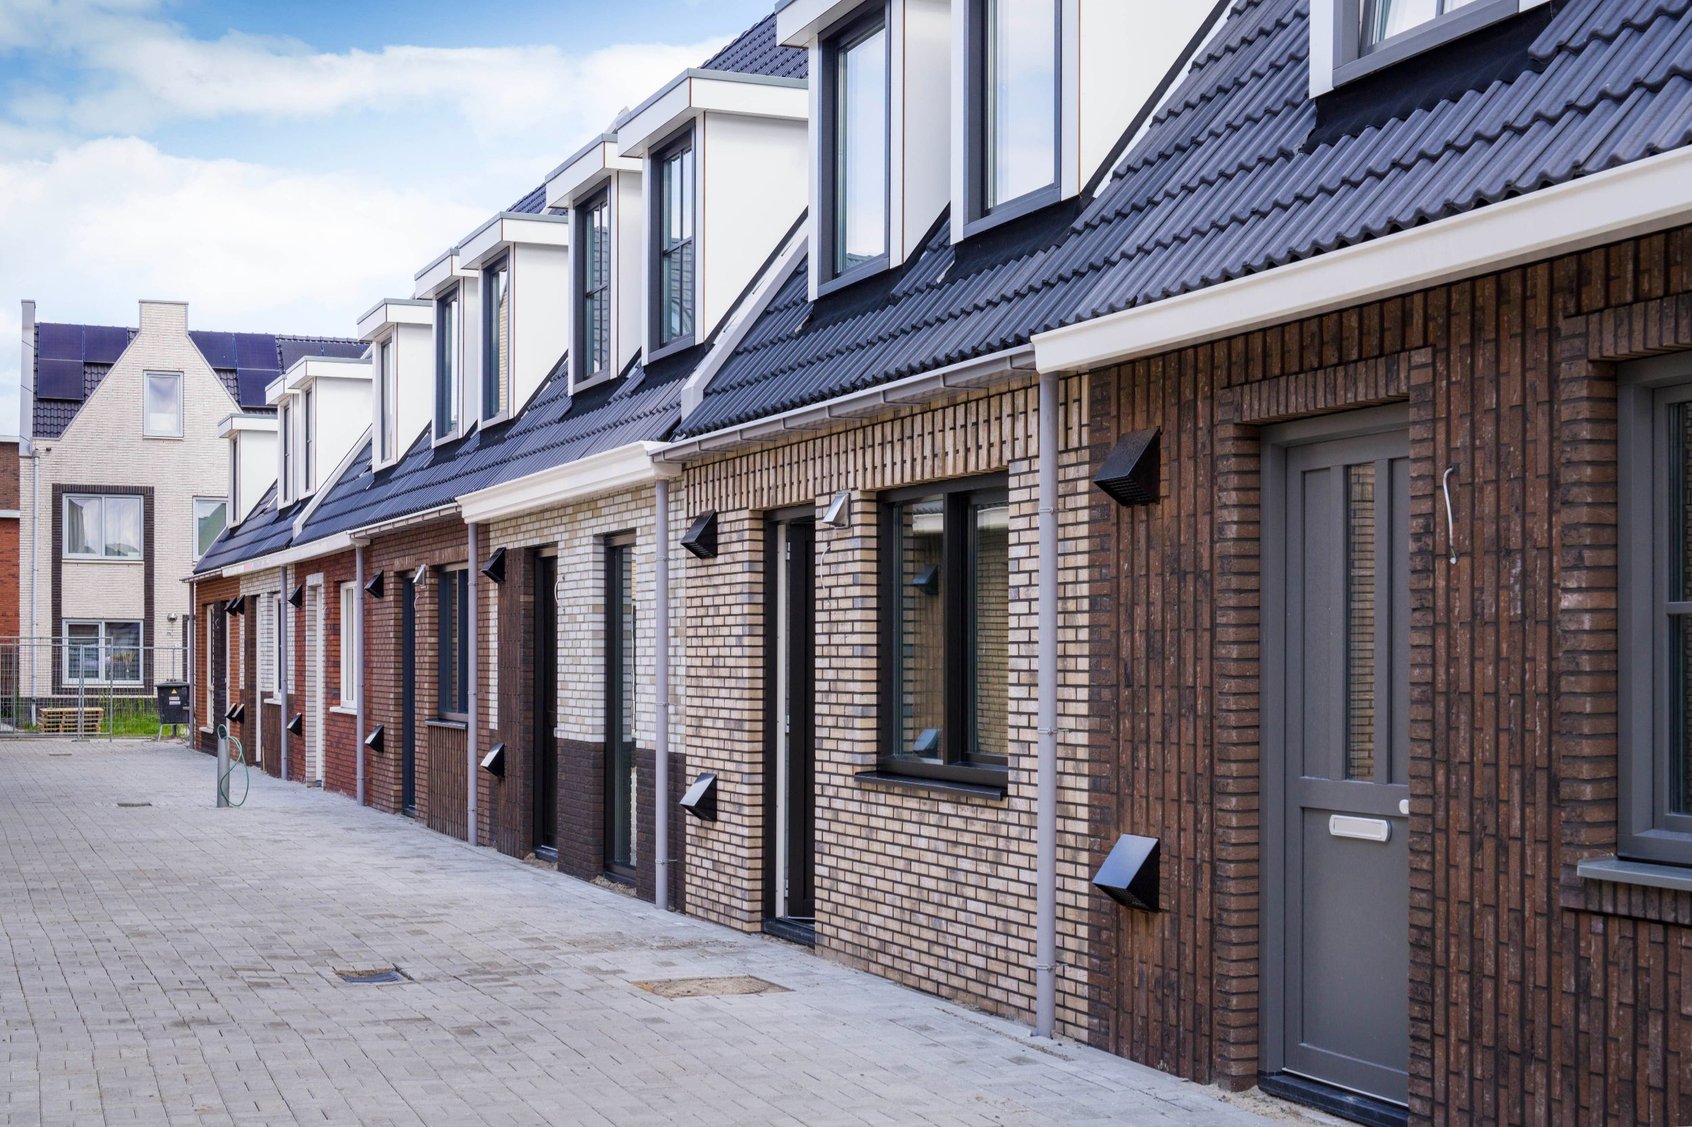 Foto van een straat met eenlaags met kap woningen in Parkwijk Lelystad. De gevels hebben allemaal verschillende kleuren gevelstenen. De woningen hebben twee dakkapellen op de eerste verdieping.